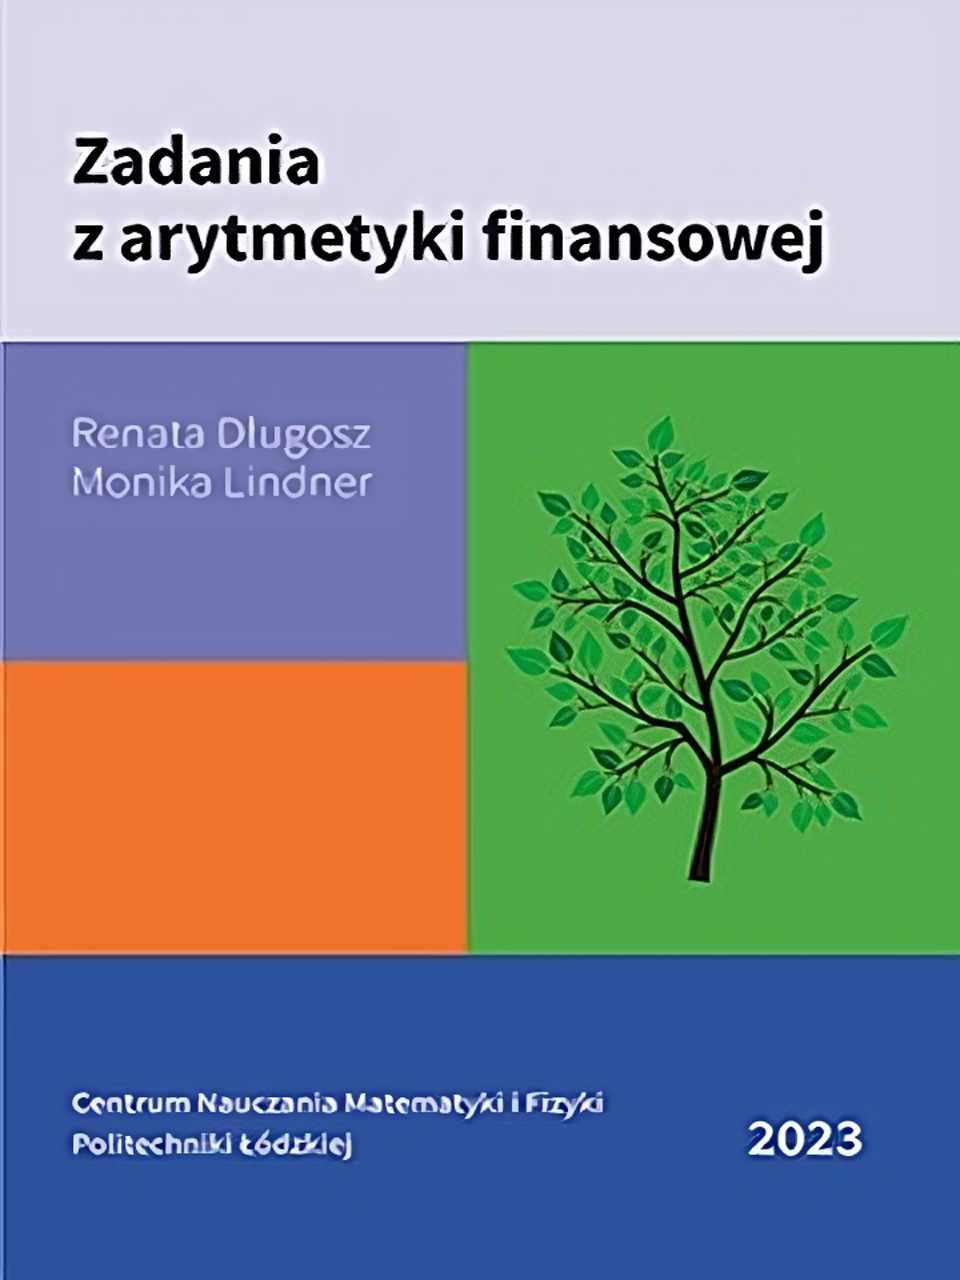 Okładka książki  "Zadania z arytmetyki finansowej" autorstwa Renaty Długosz i Moniki Lindner. Okładka podzielona jest na różnych rozmiarów prostokąty, na jednym z nich narysowane jest drzewo. 